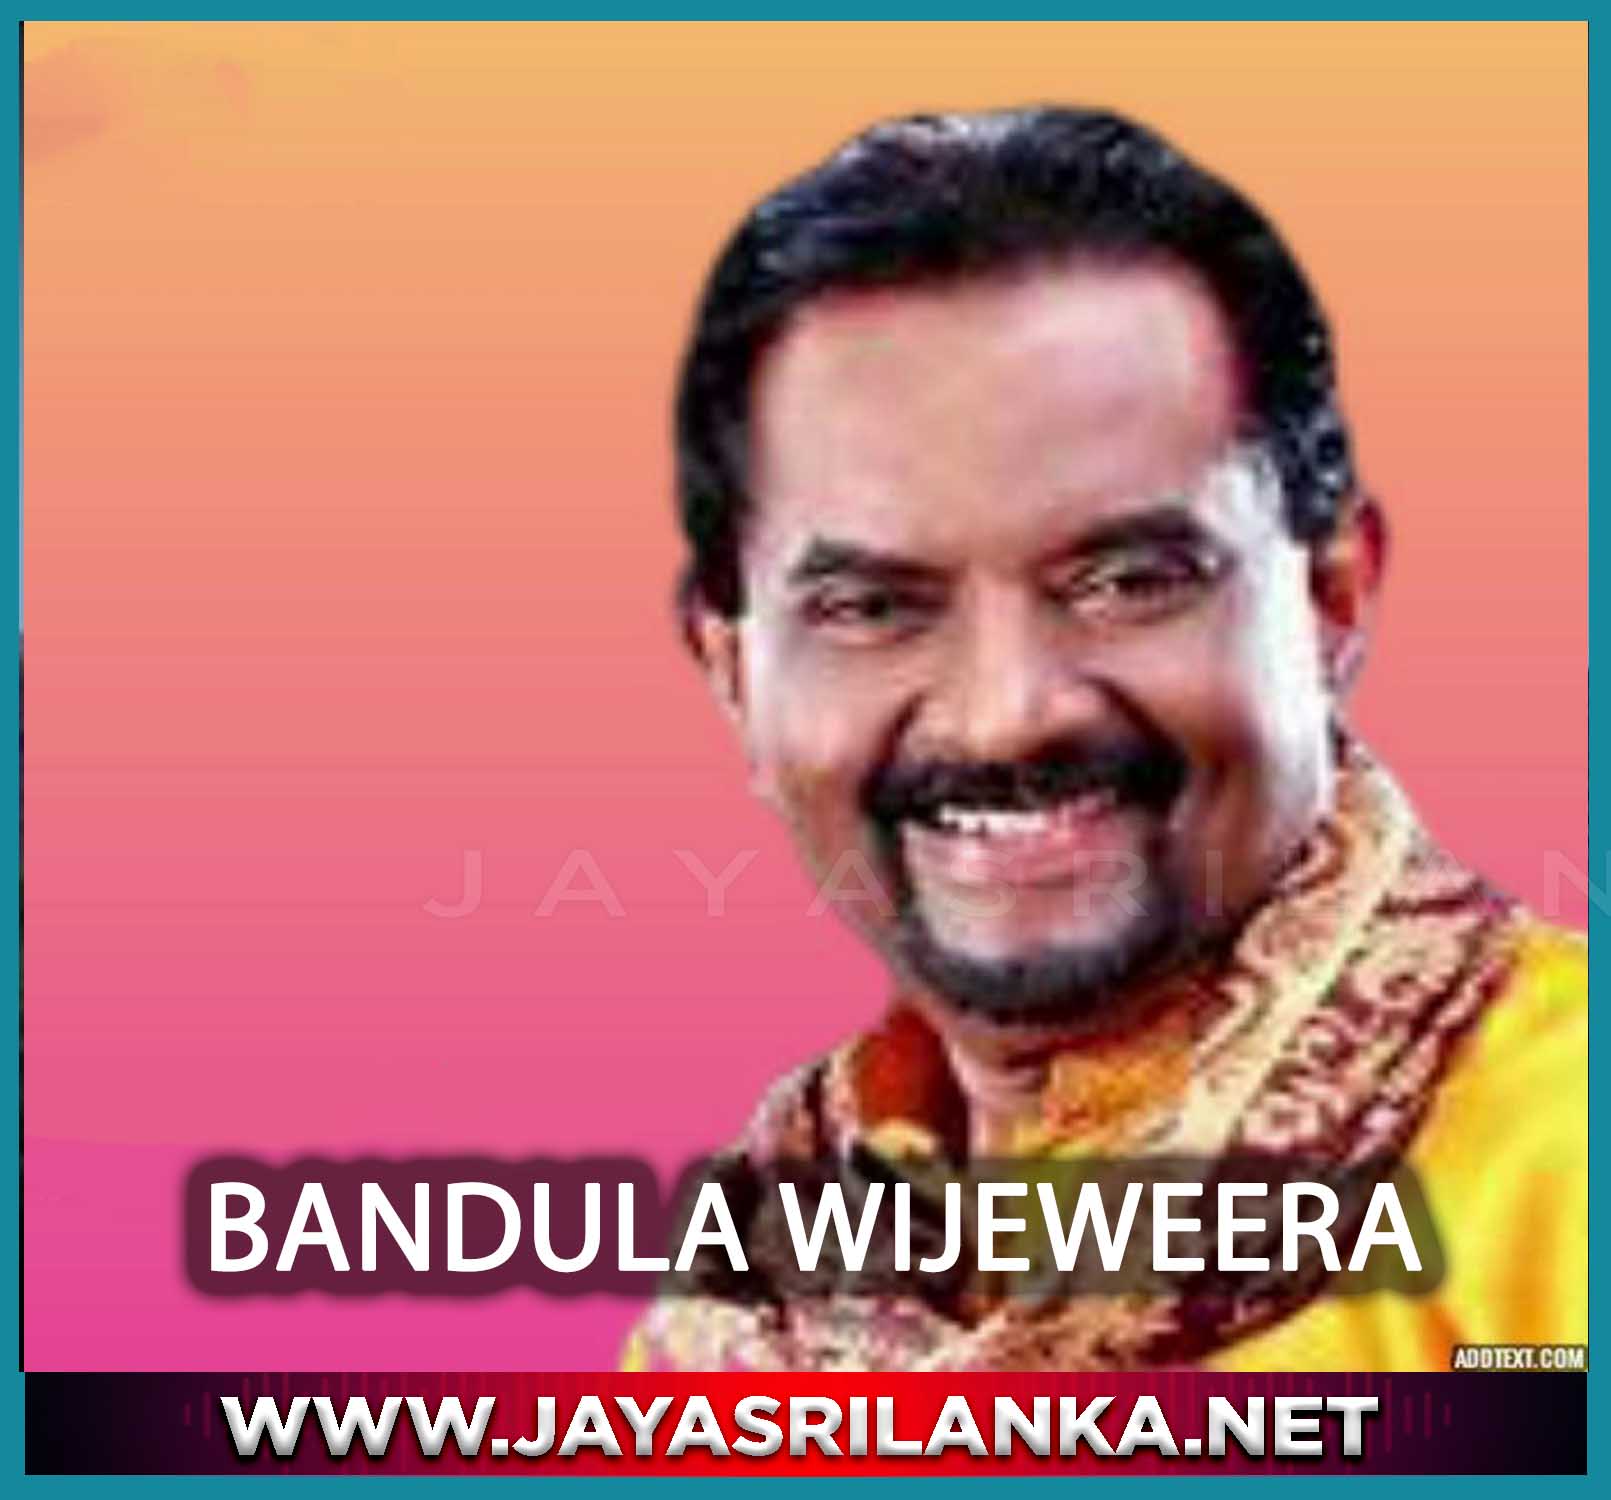 Lawali Thalawama - Bandula Wijeweera mp3 Image